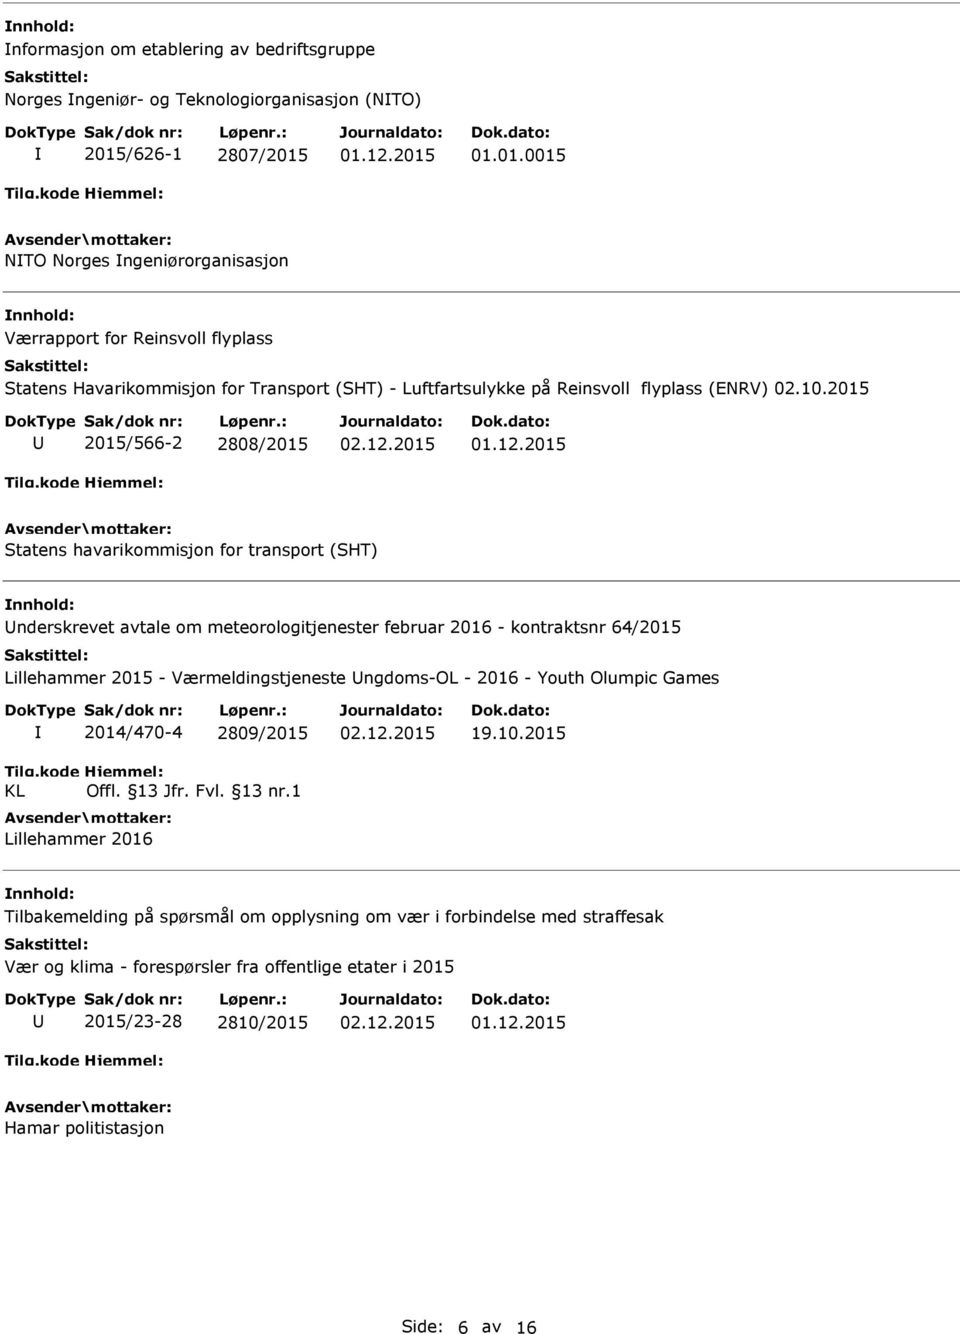 2015 2015/566-2 2808/2015 Statens havarikommisjon for transport (SHT) nderskrevet avtale om meteorologitjenester februar 2016 - kontraktsnr 64/2015 Lillehammer 2015 - Værmeldingstjeneste ngdoms-ol -